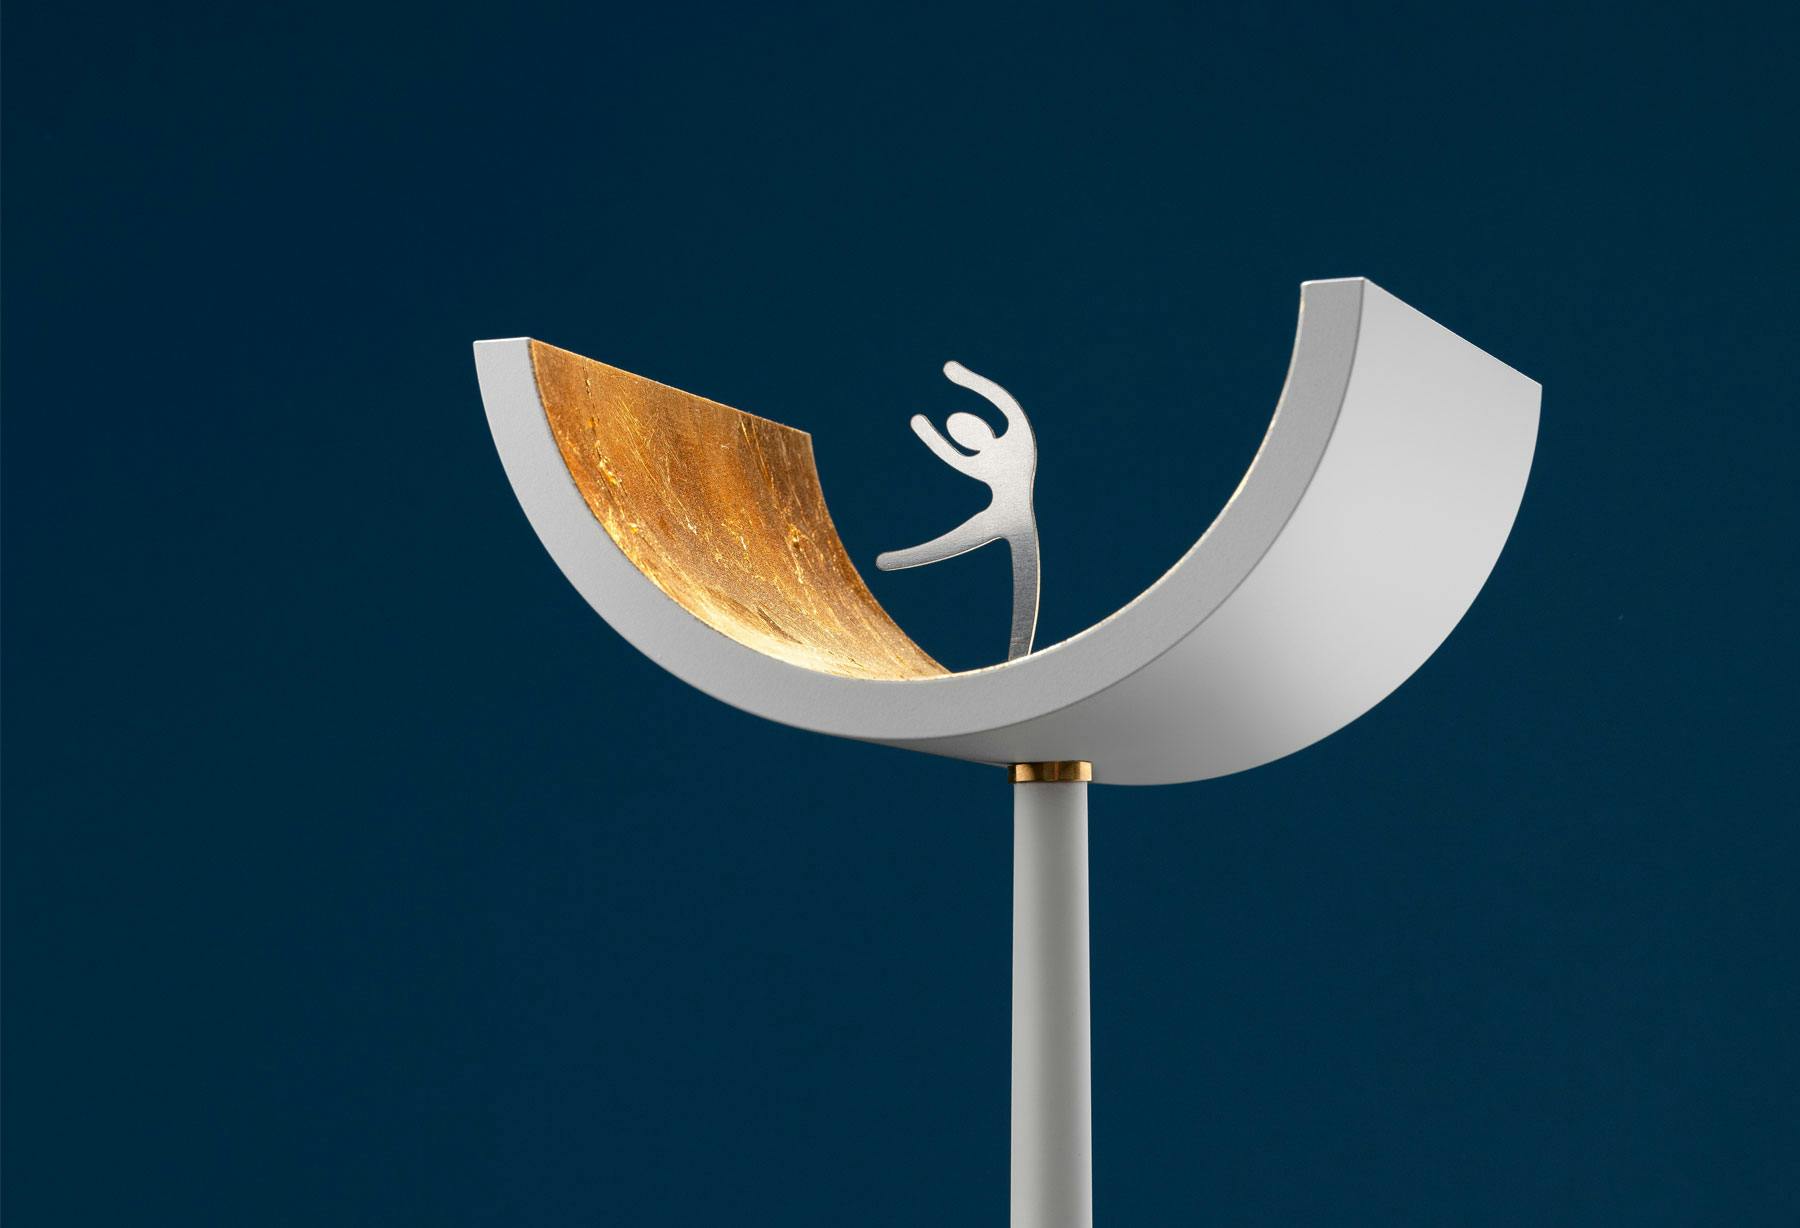 <p>La lampada “U” viene selezionata da uno dei più rinomati premi internazionali per l’eccellenza del design ed è esposta ad Atene in occasione della mostra “The Annual Good Design Show 2021”</p>
